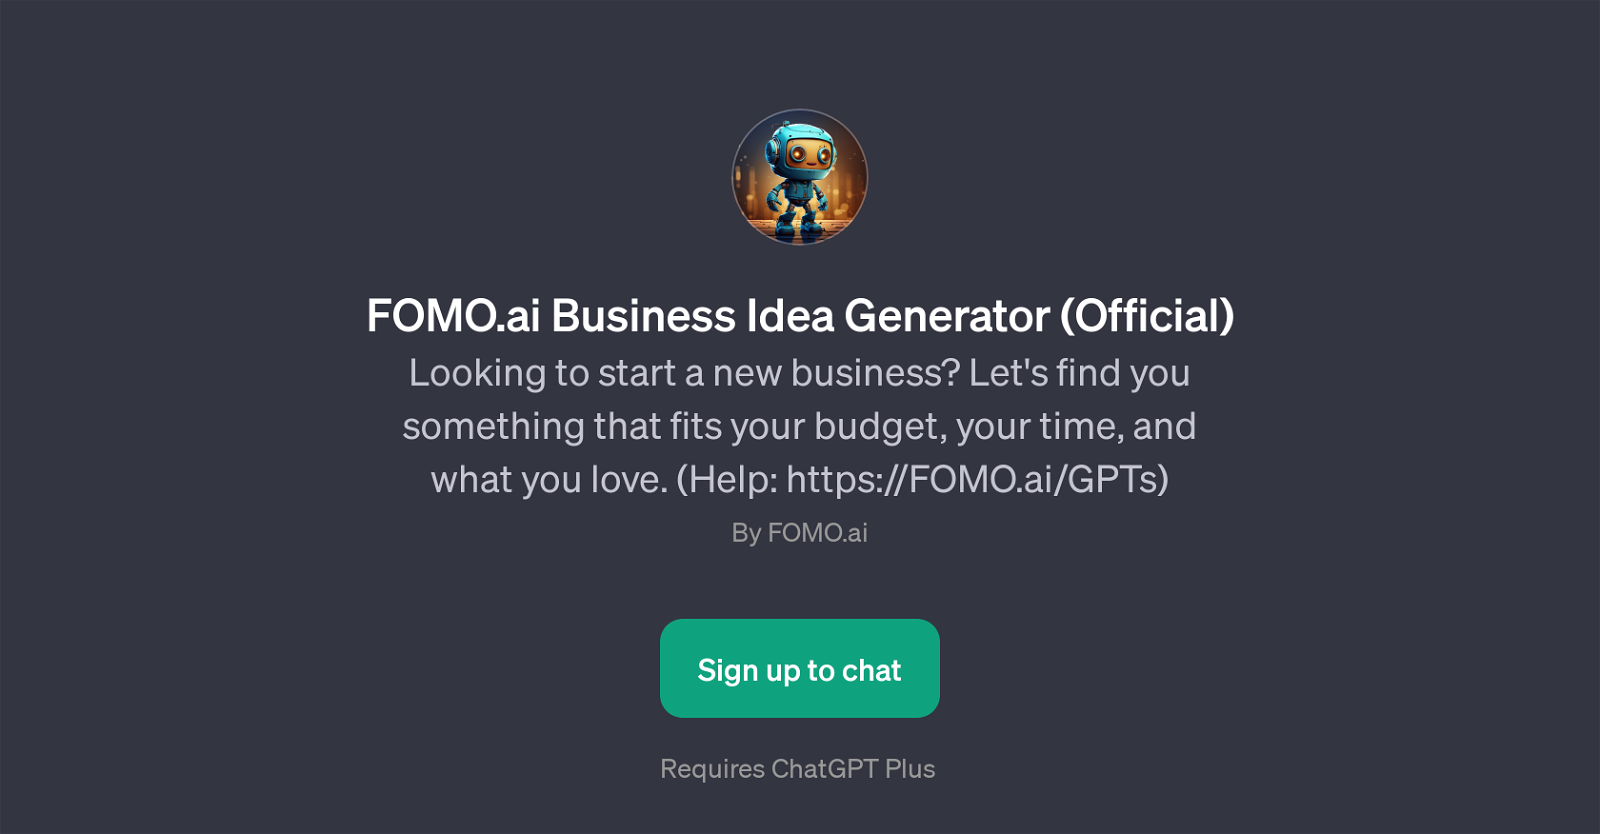 FOMO.ai Business Idea Generator website